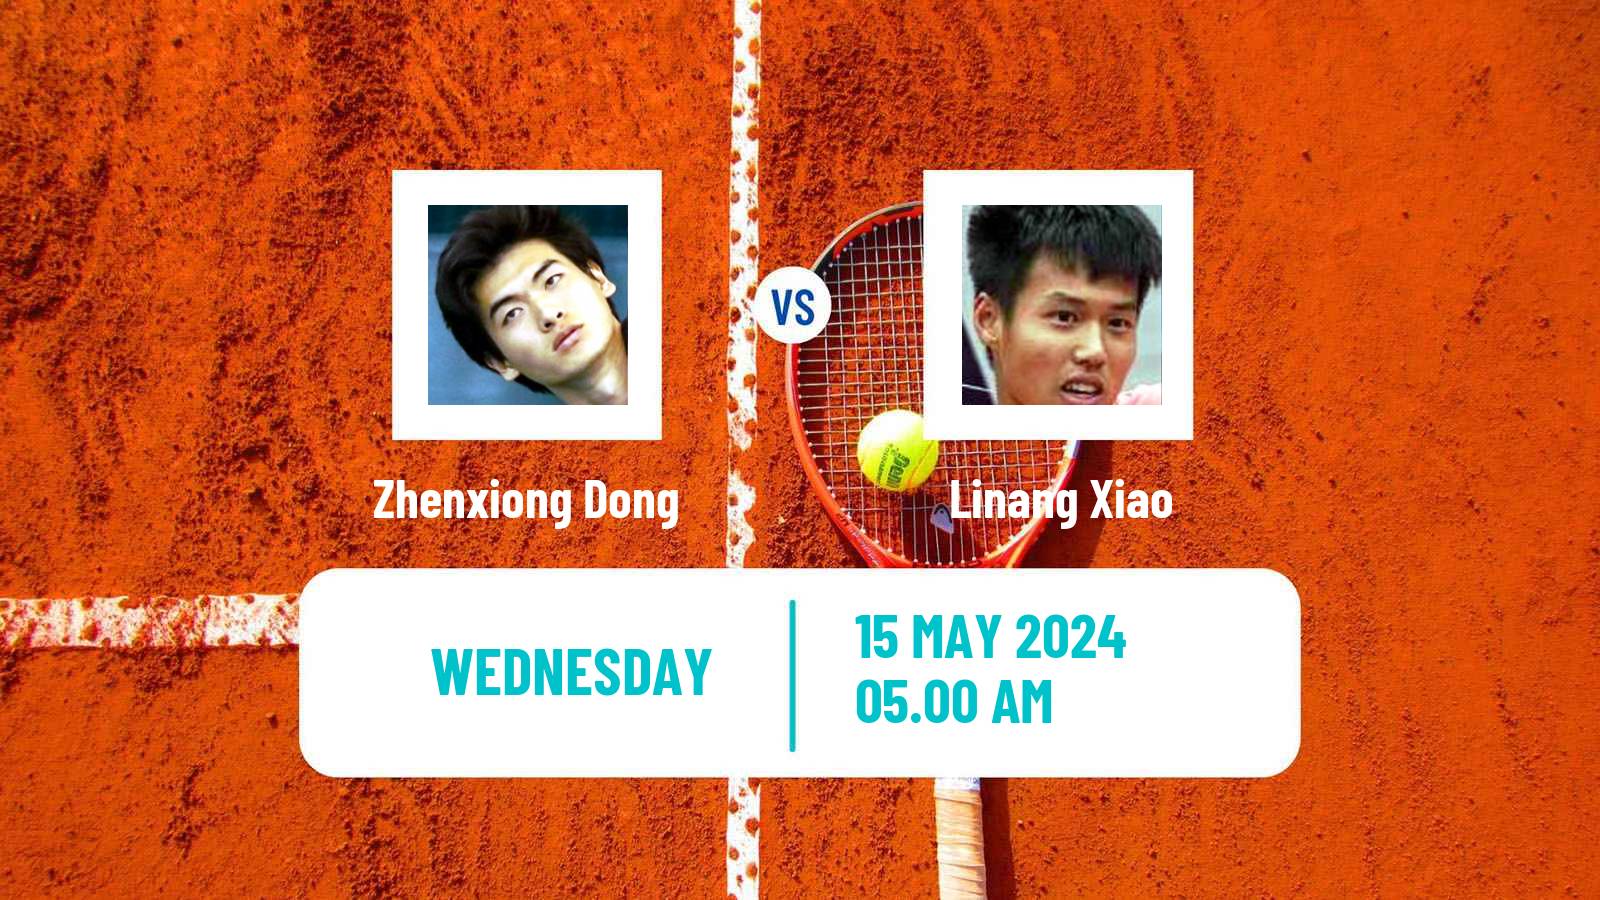 Tennis ITF M25 Luan Men Zhenxiong Dong - Linang Xiao